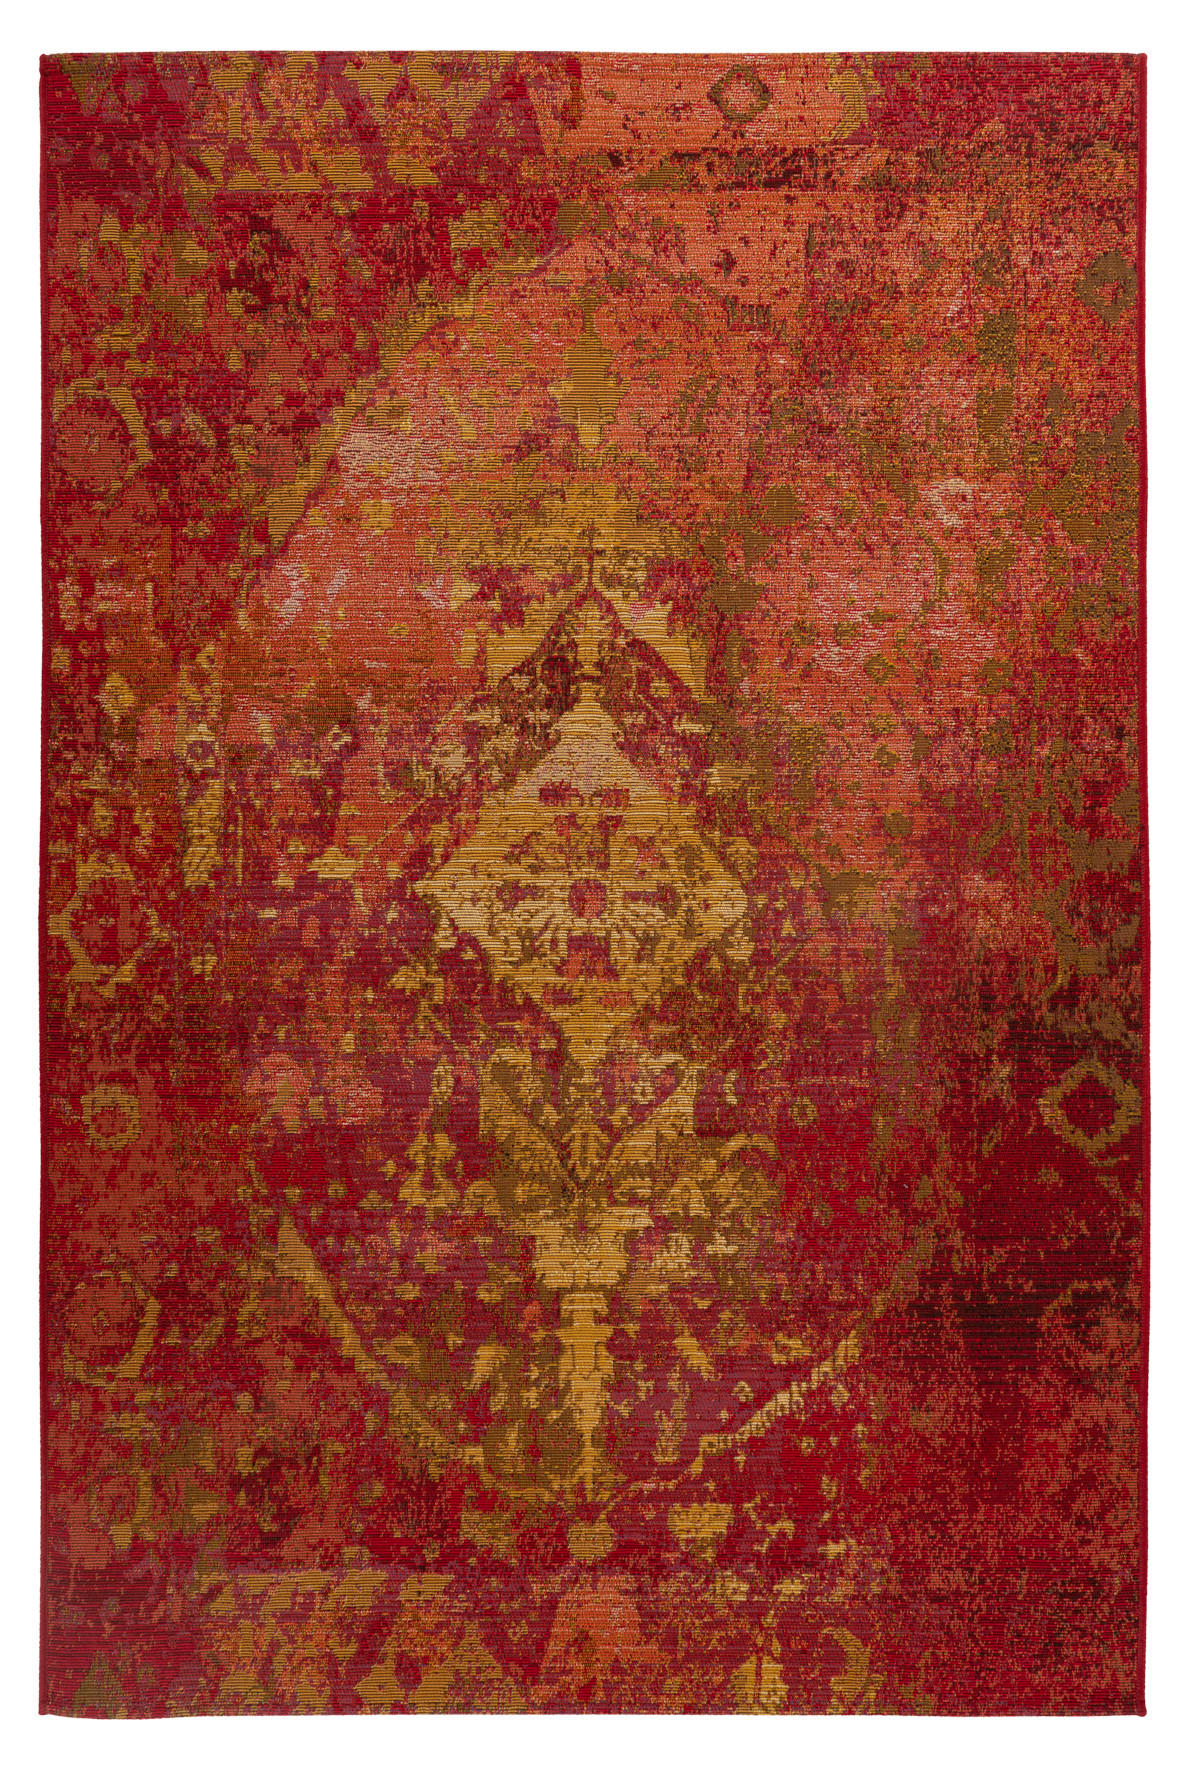 In- und Outdoorteppich  80/150 cm  Rot   - Rot, Design, Textil (80/150cm) - Novel